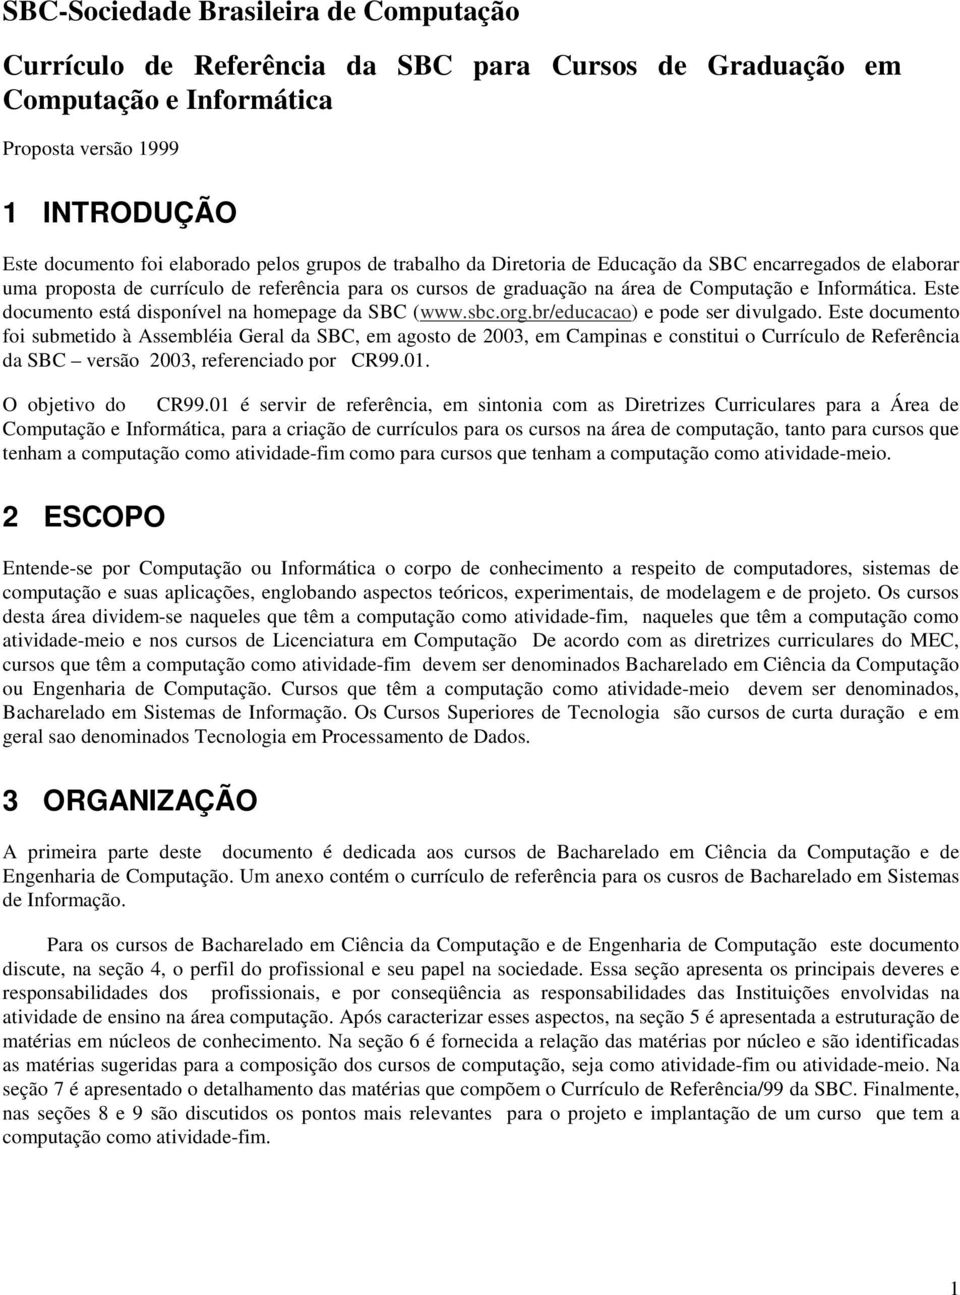 Este documento está disponível na homepage da SBC (www.sbc.org.br/educacao) e pode ser divulgado.